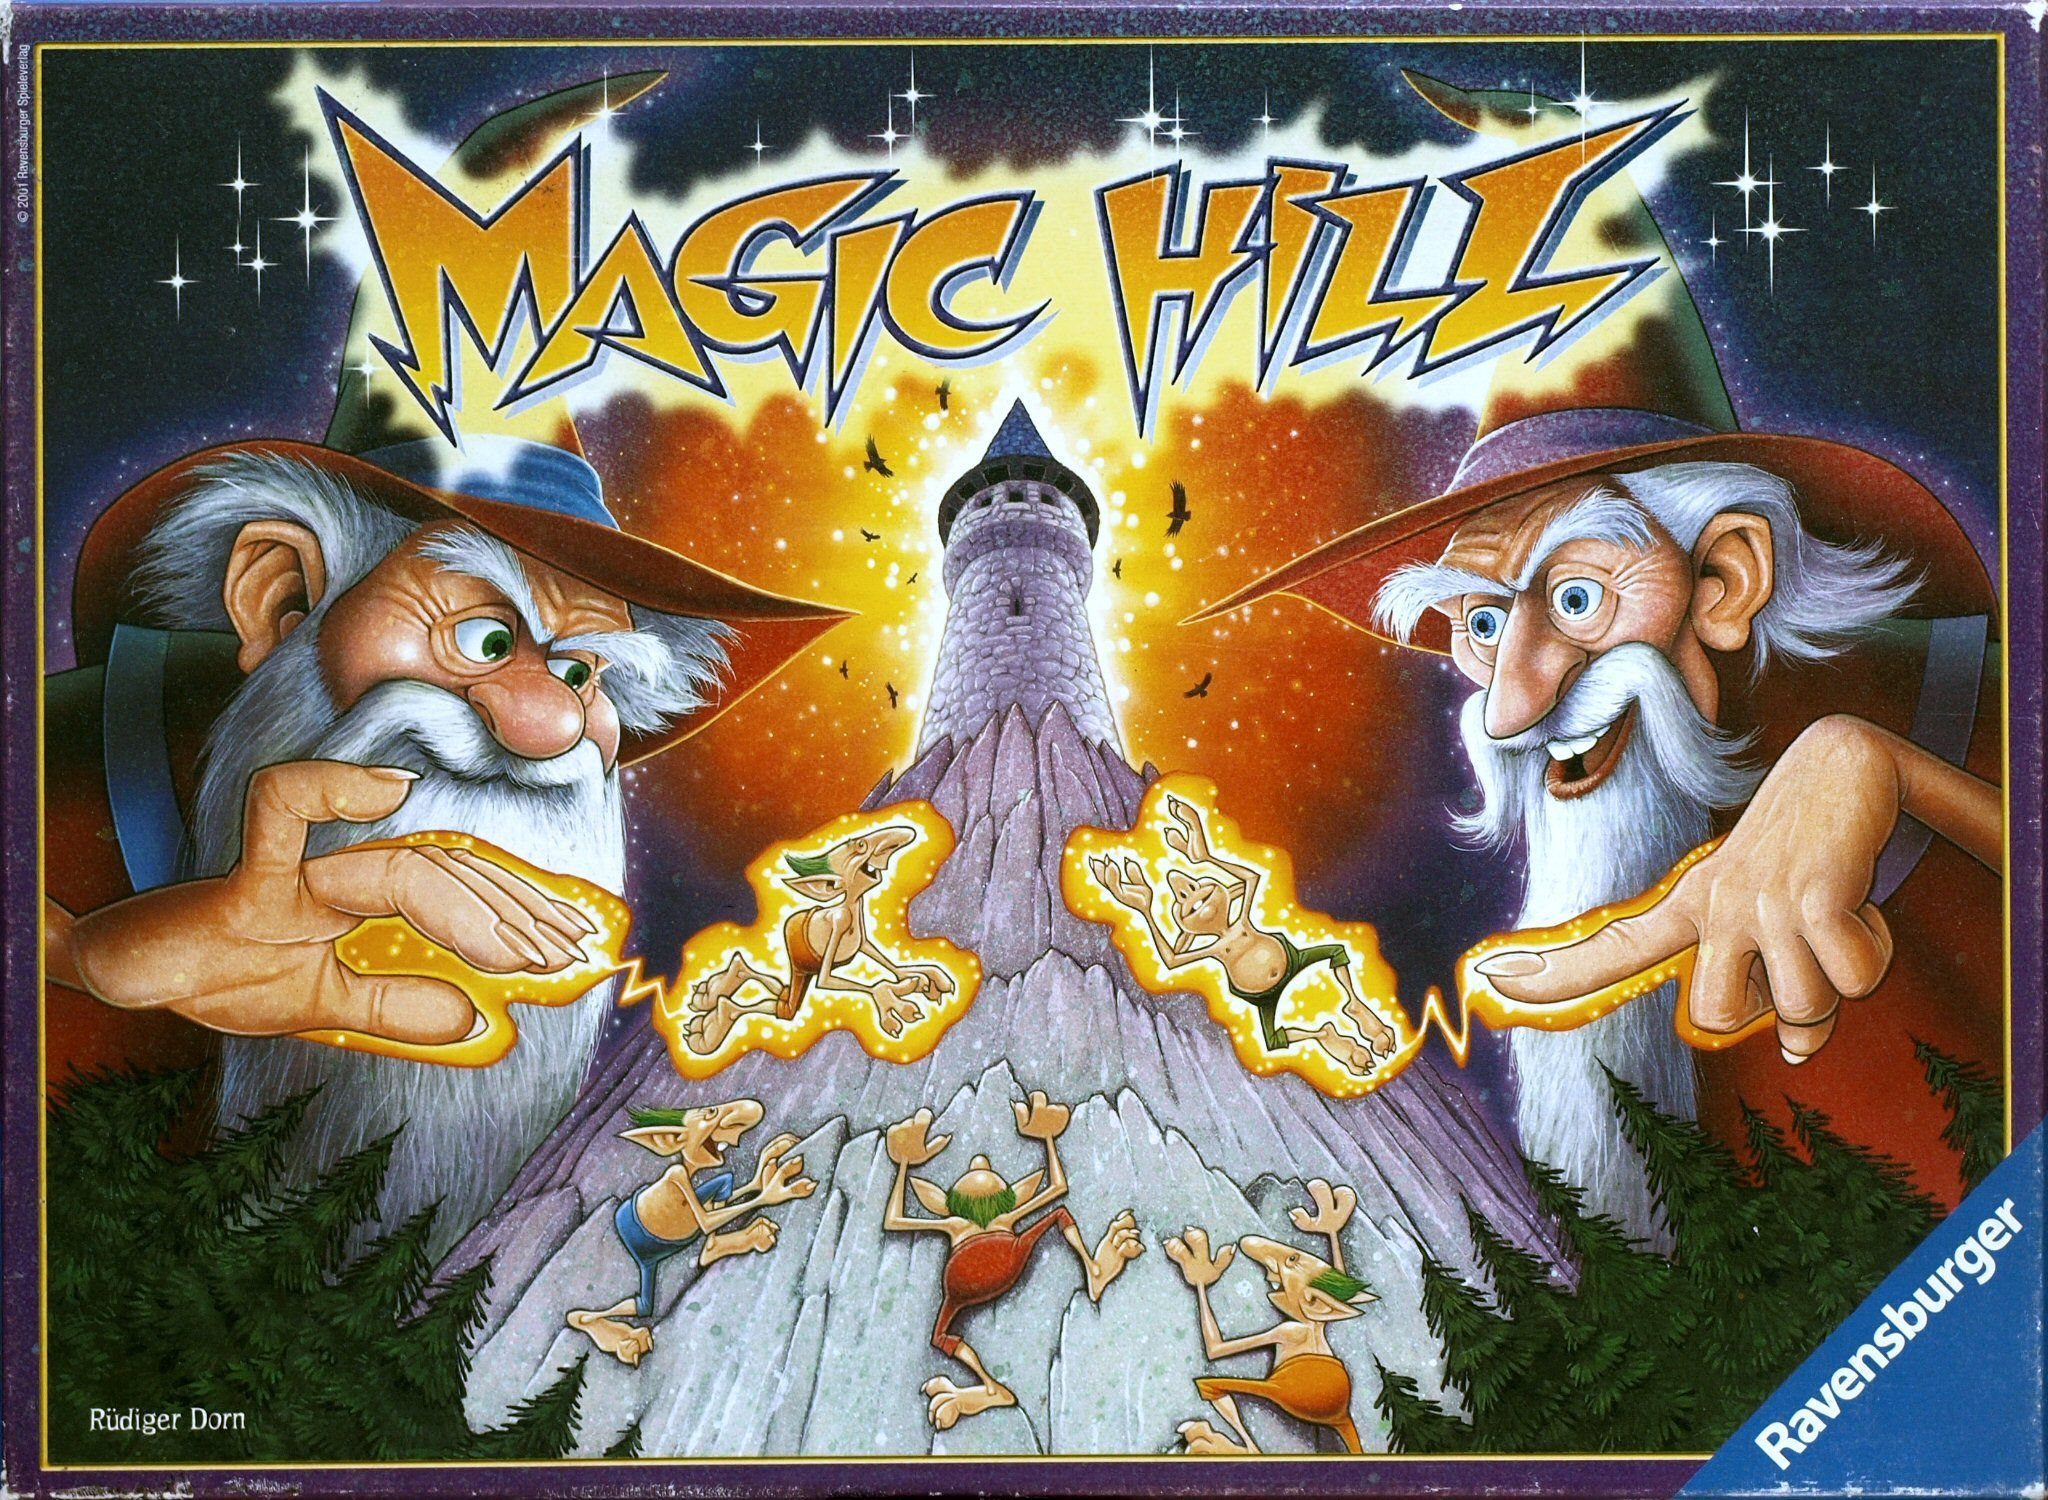 Magic Hill